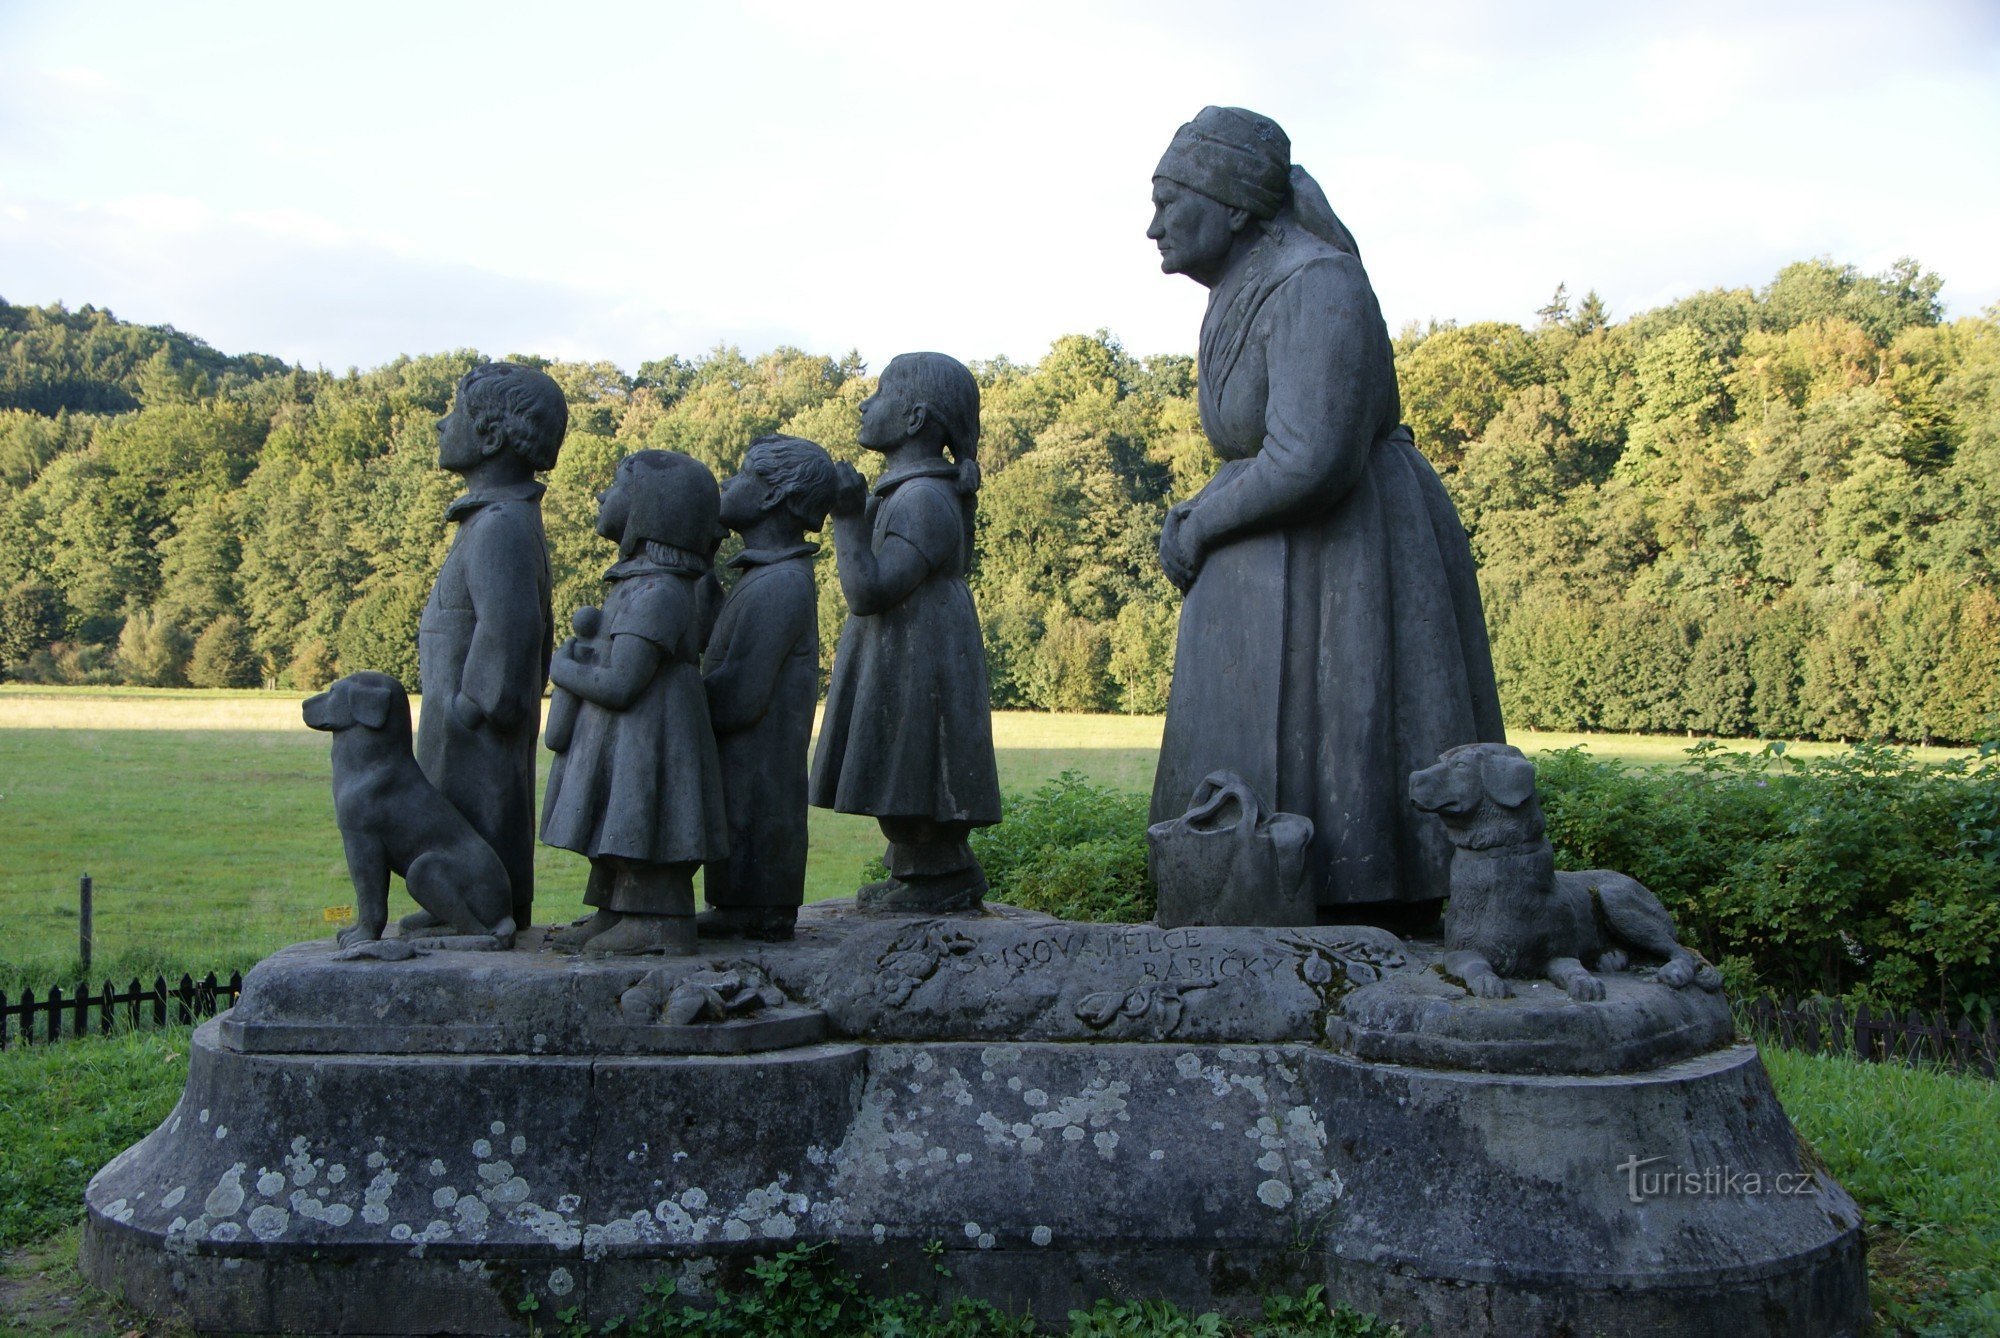 Grandmother's Valley - sculpture Grandmother with grandchildren